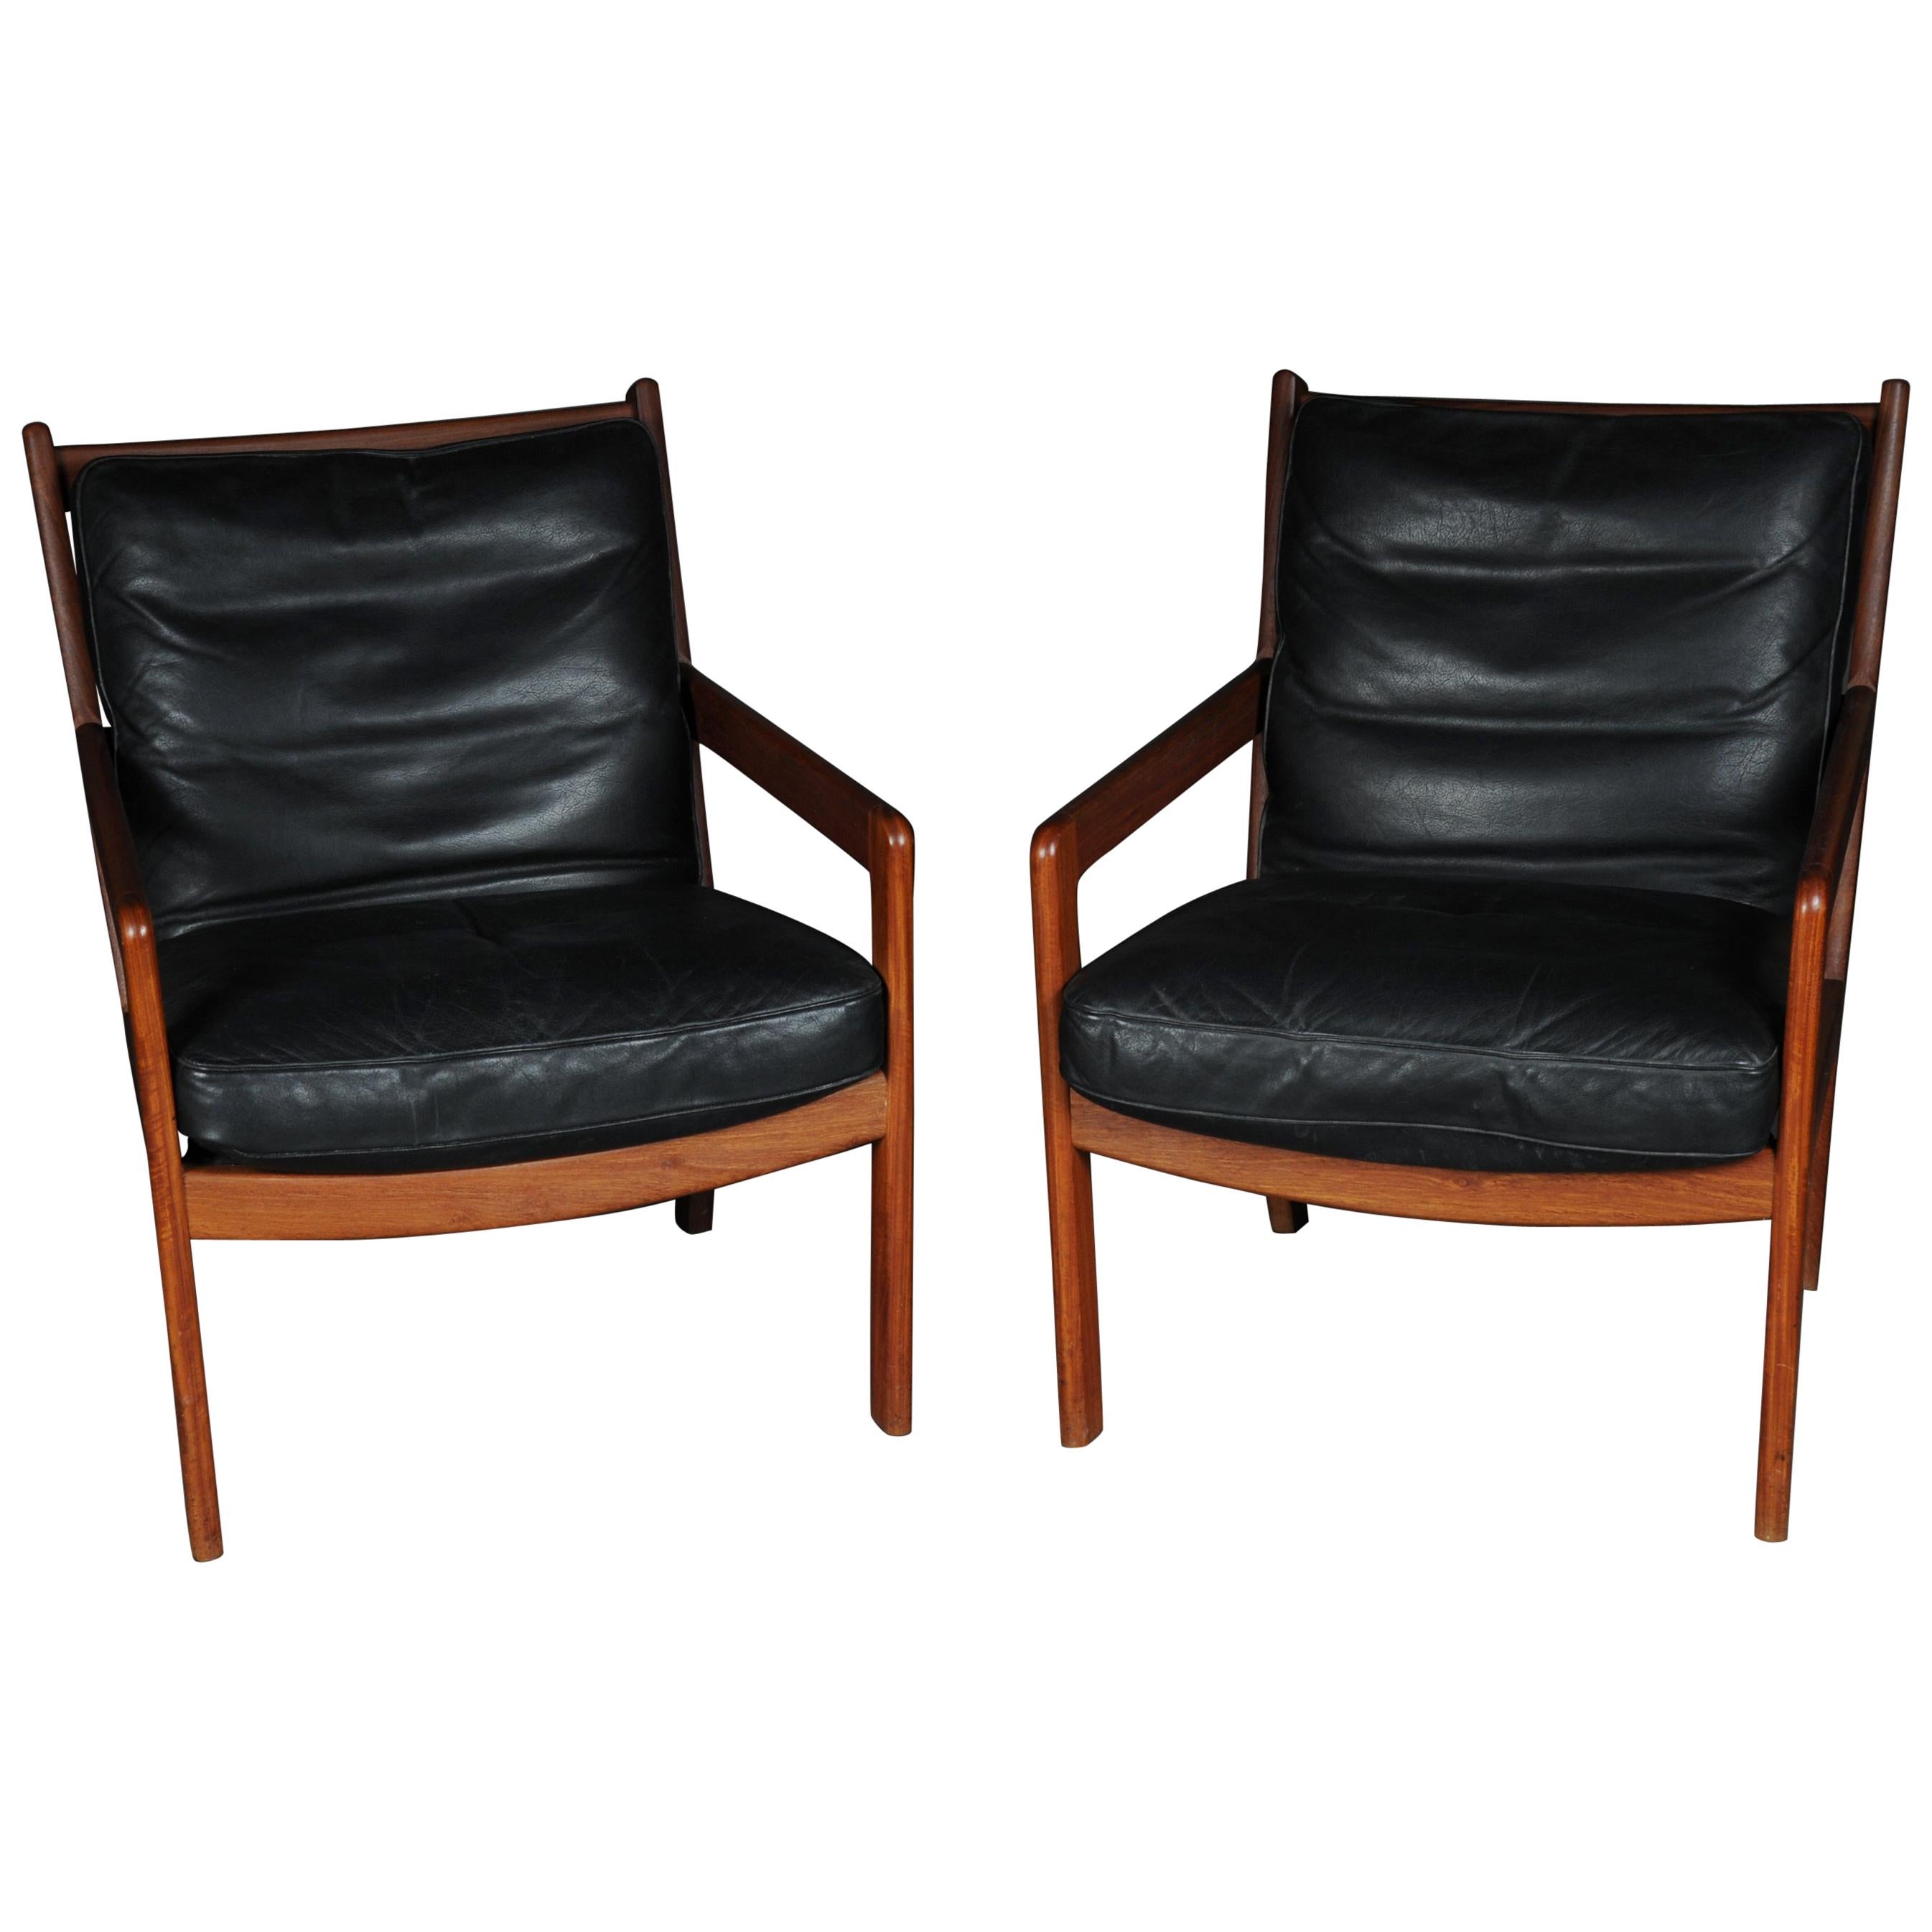 Paire de fauteuils vintage en teck, chaises, années 1960-1970, danois